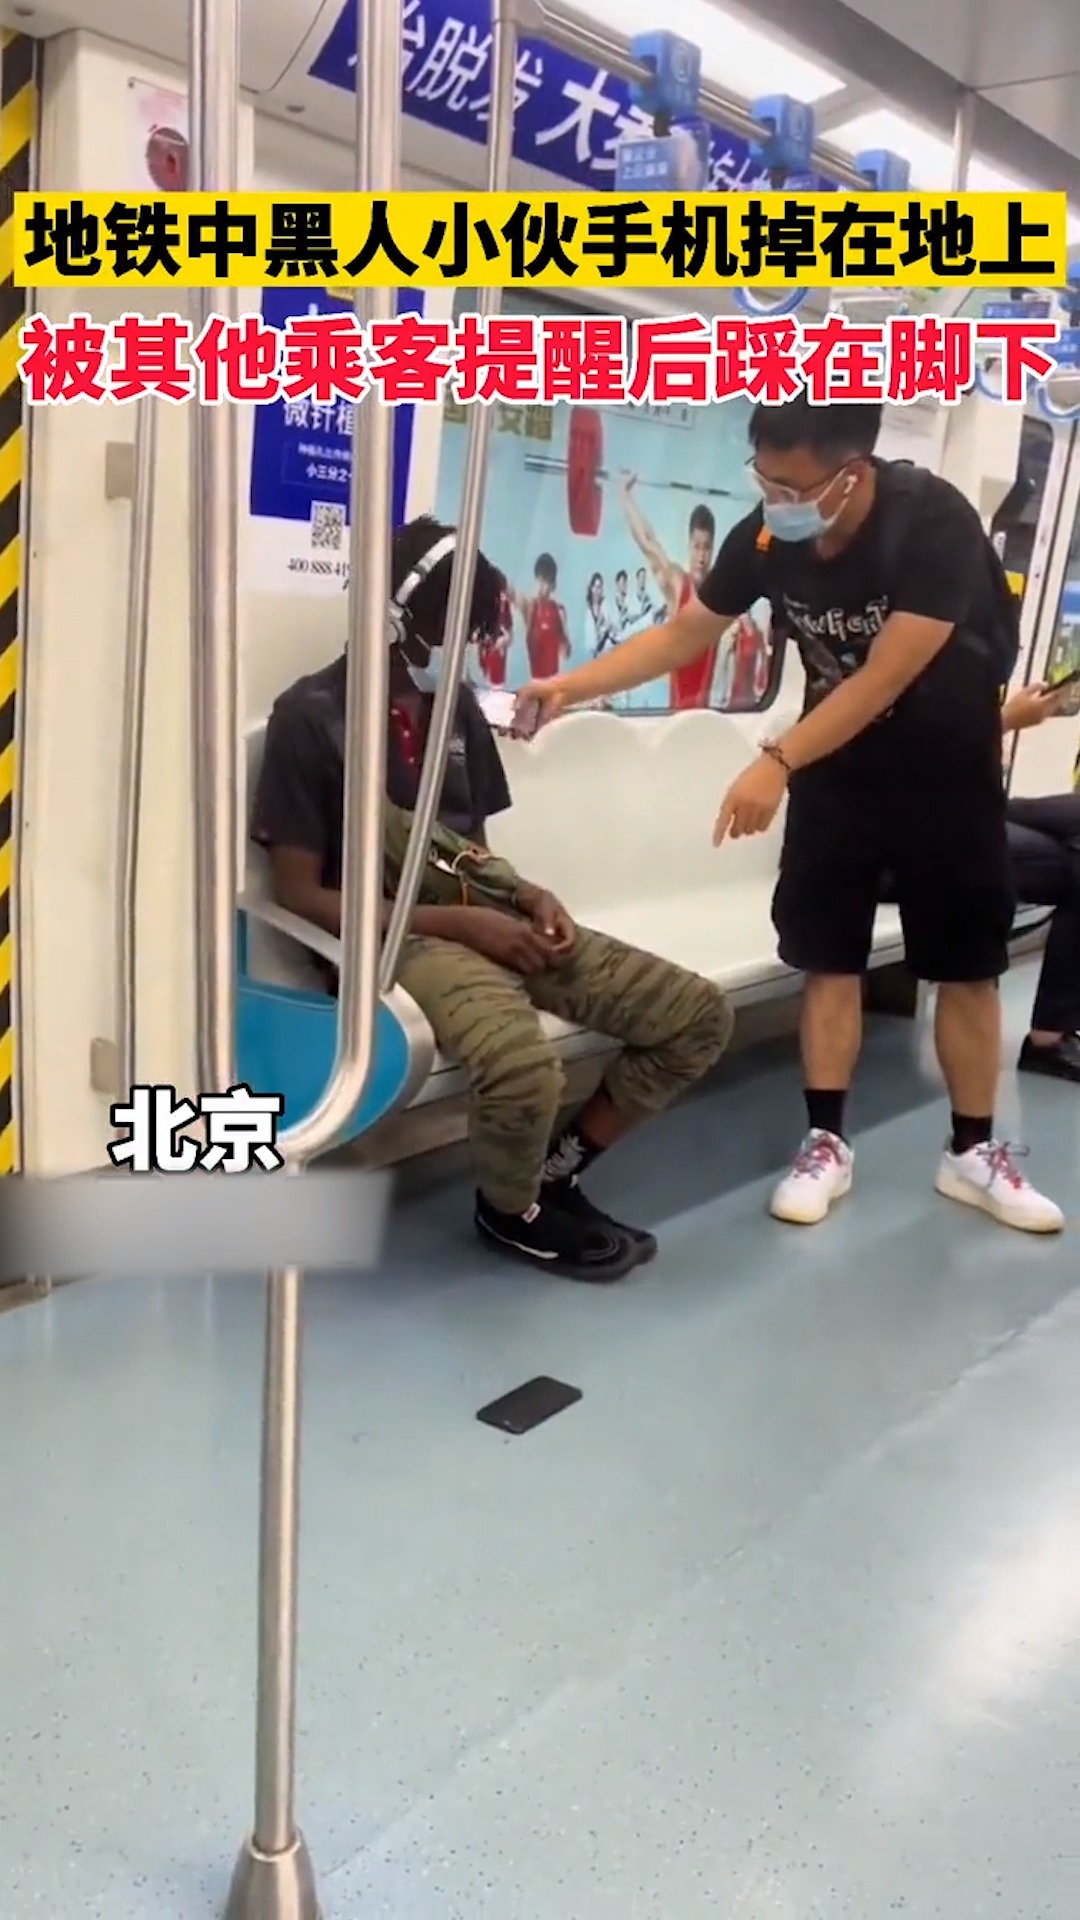 感谢全民我要上热门地铁中黑人小伙手机掉在地上被其他乘客提醒后竟把